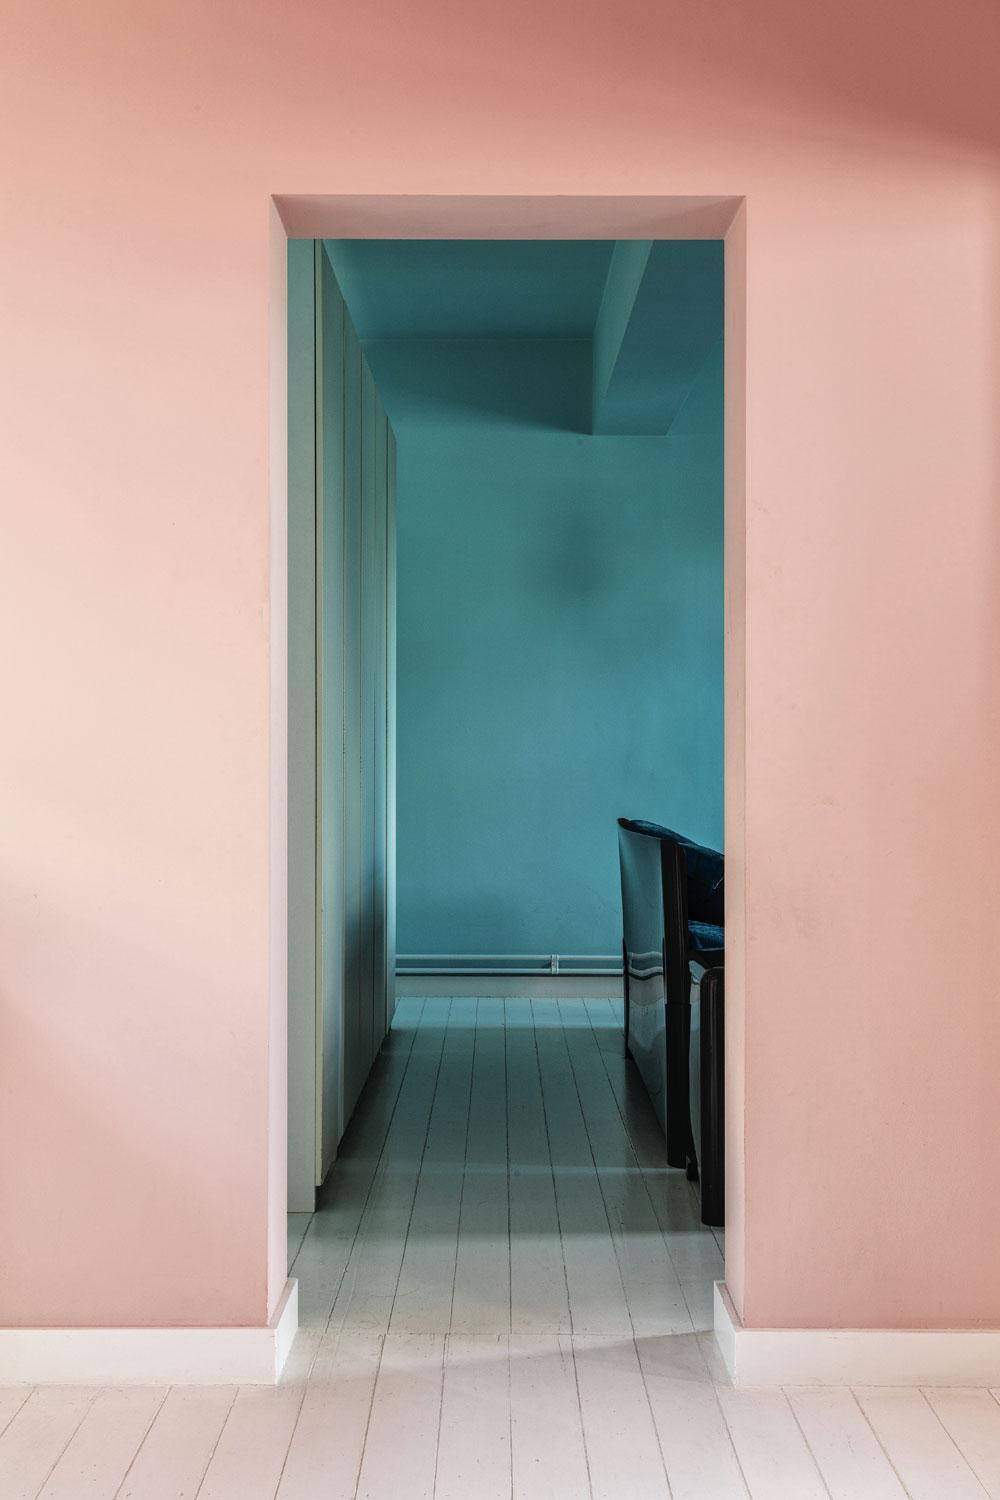 A l'étage, les chambres participent à un nouveau jeu de couleurs entre le bleu et le rose.